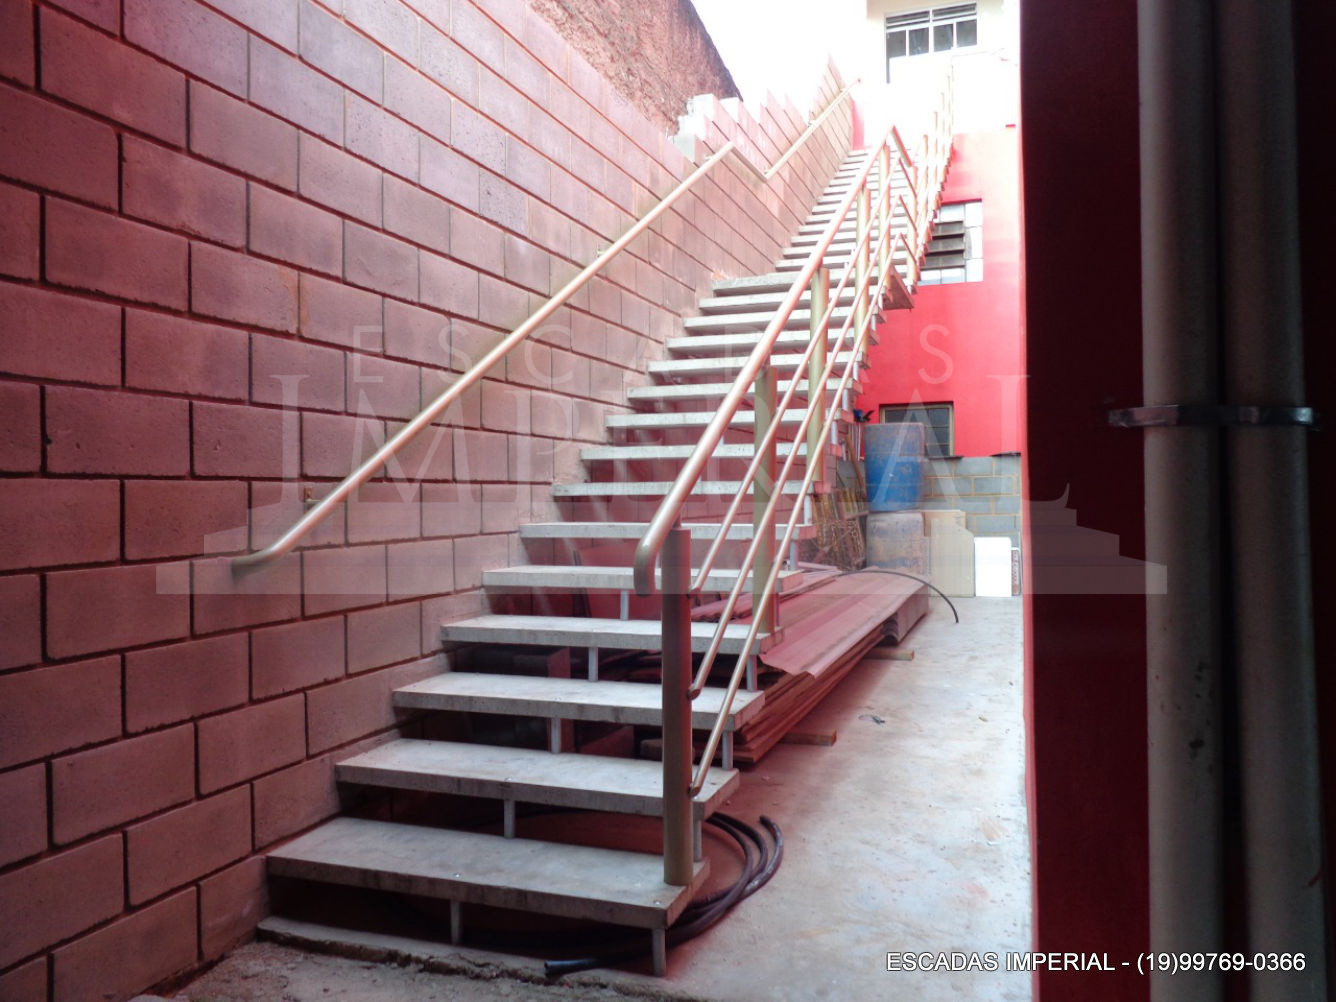 Escadas Imperial , Pré Moldadas e Concretizadas